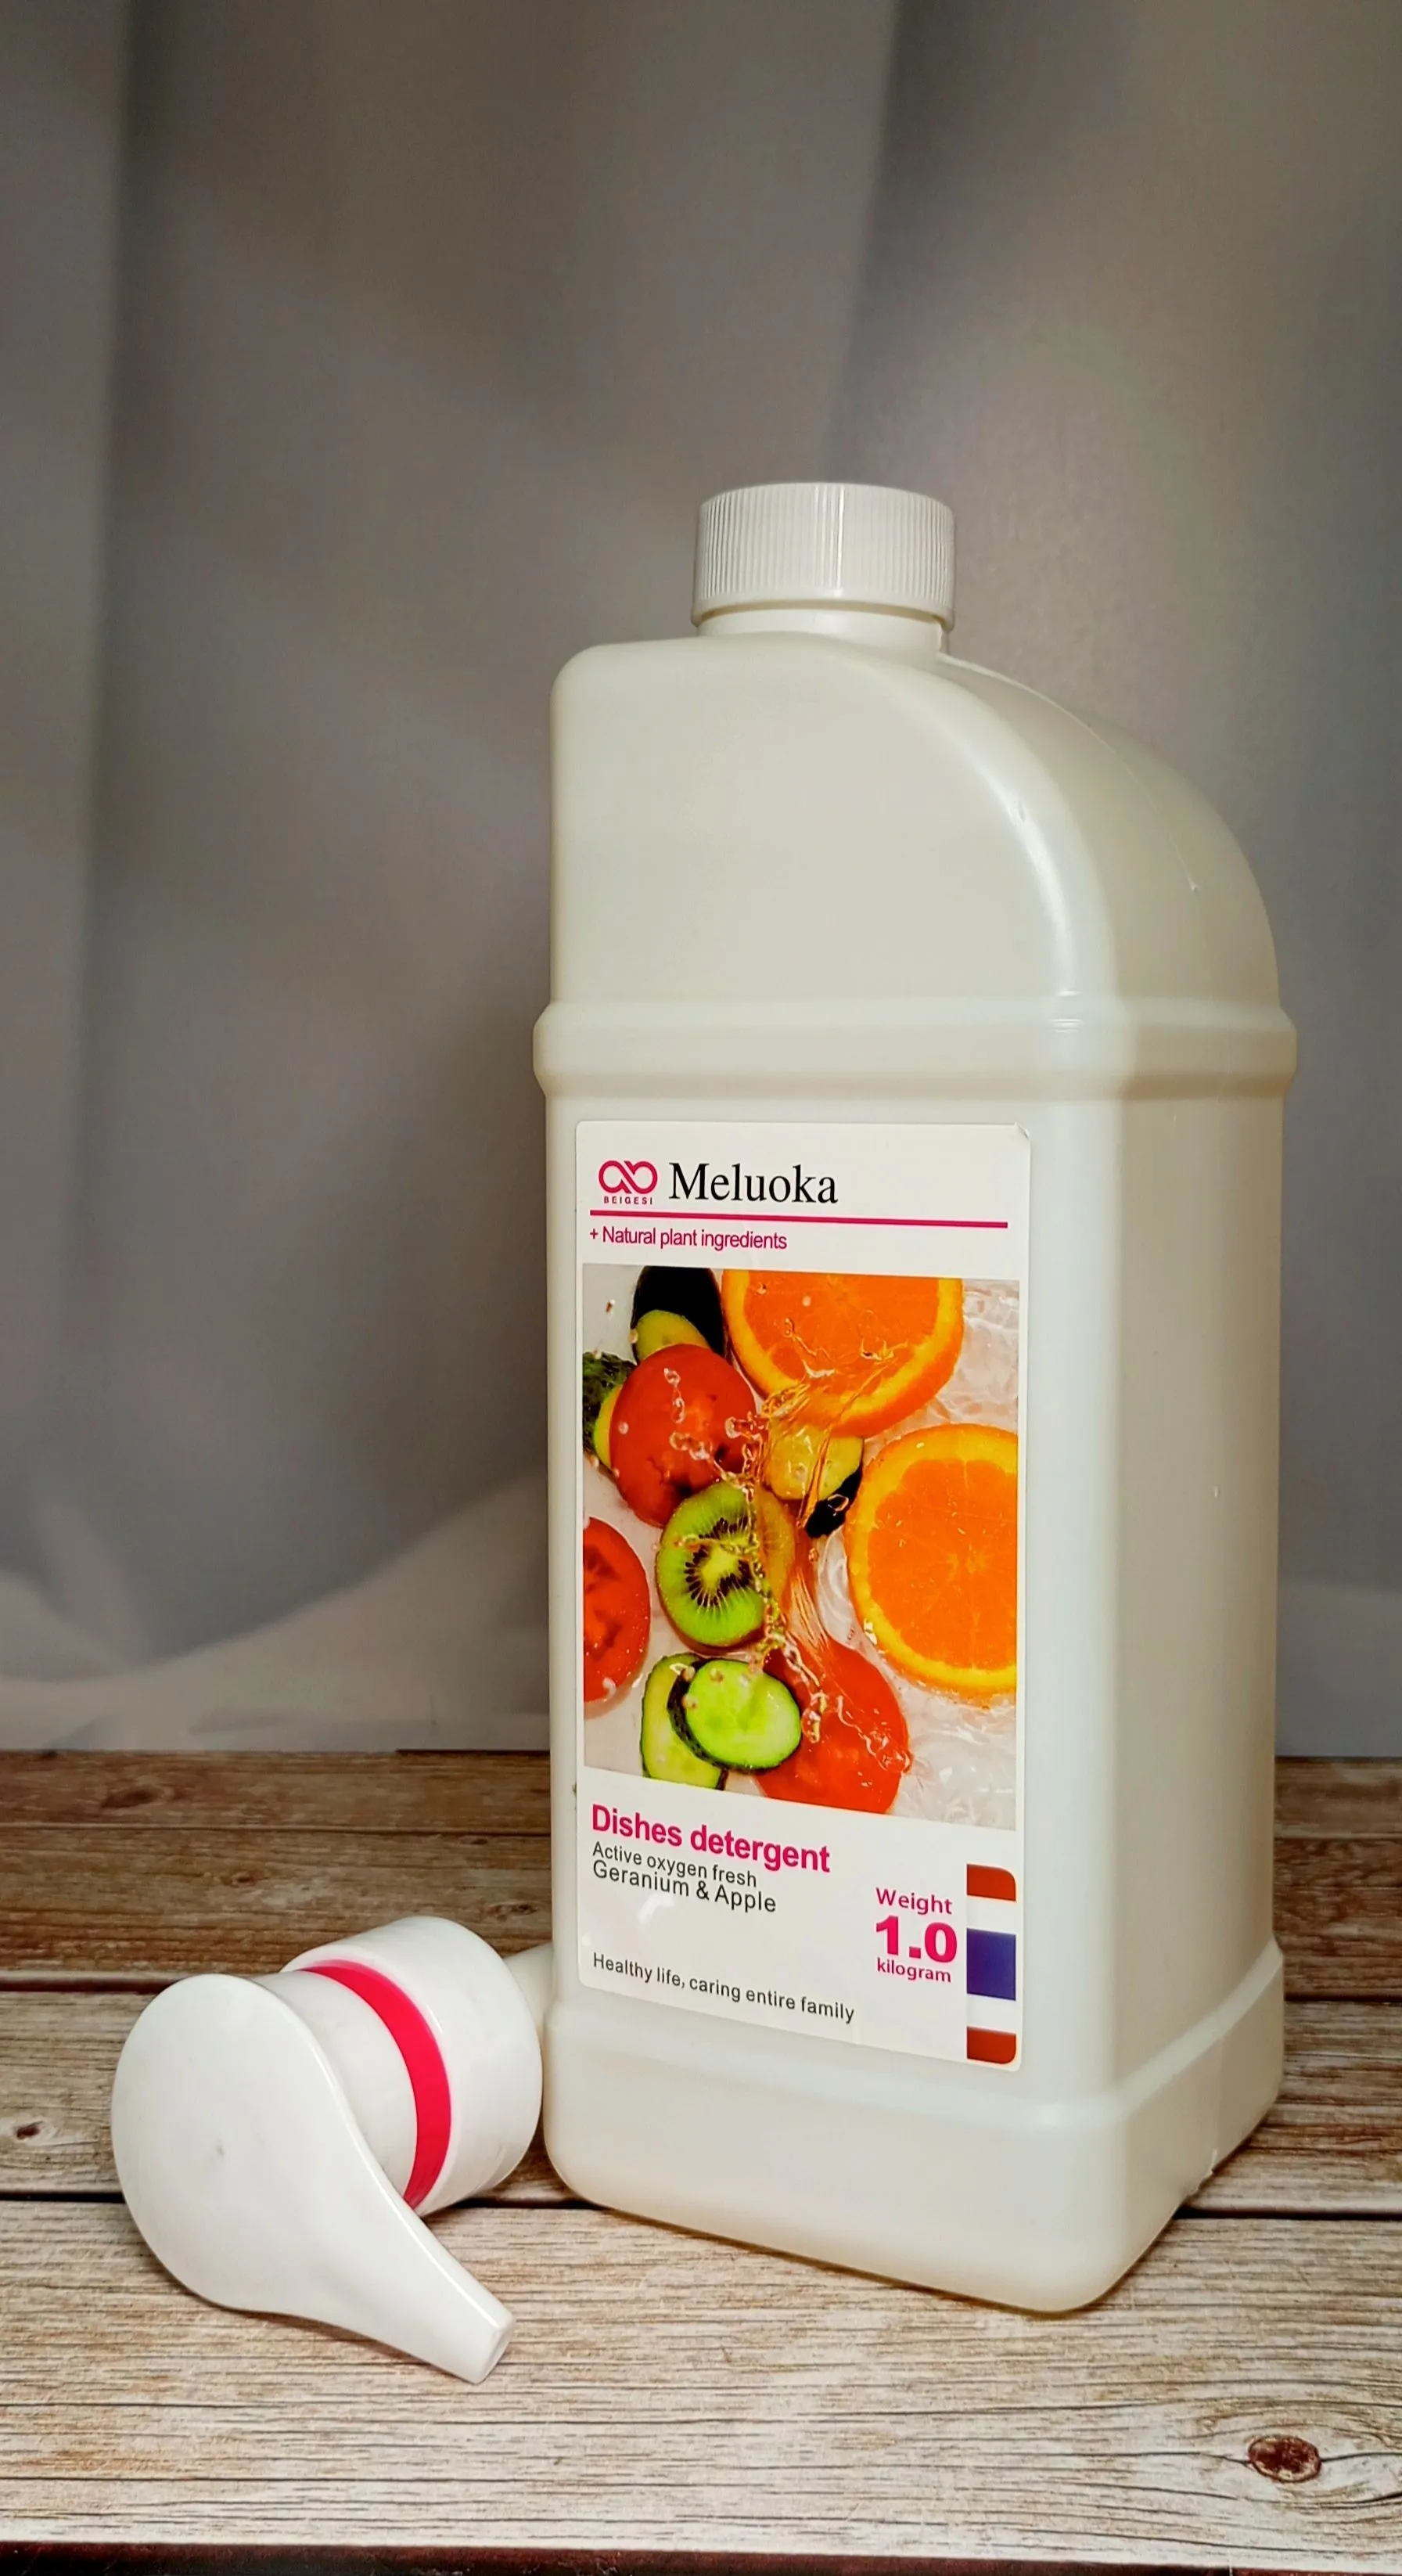 Meluoka Dishes Detergent Active Oxygen Geranim & Apple Гель для мытья посуды, фруктов и овощей на натуральных ингредиентах Герань и яблоко 1 л